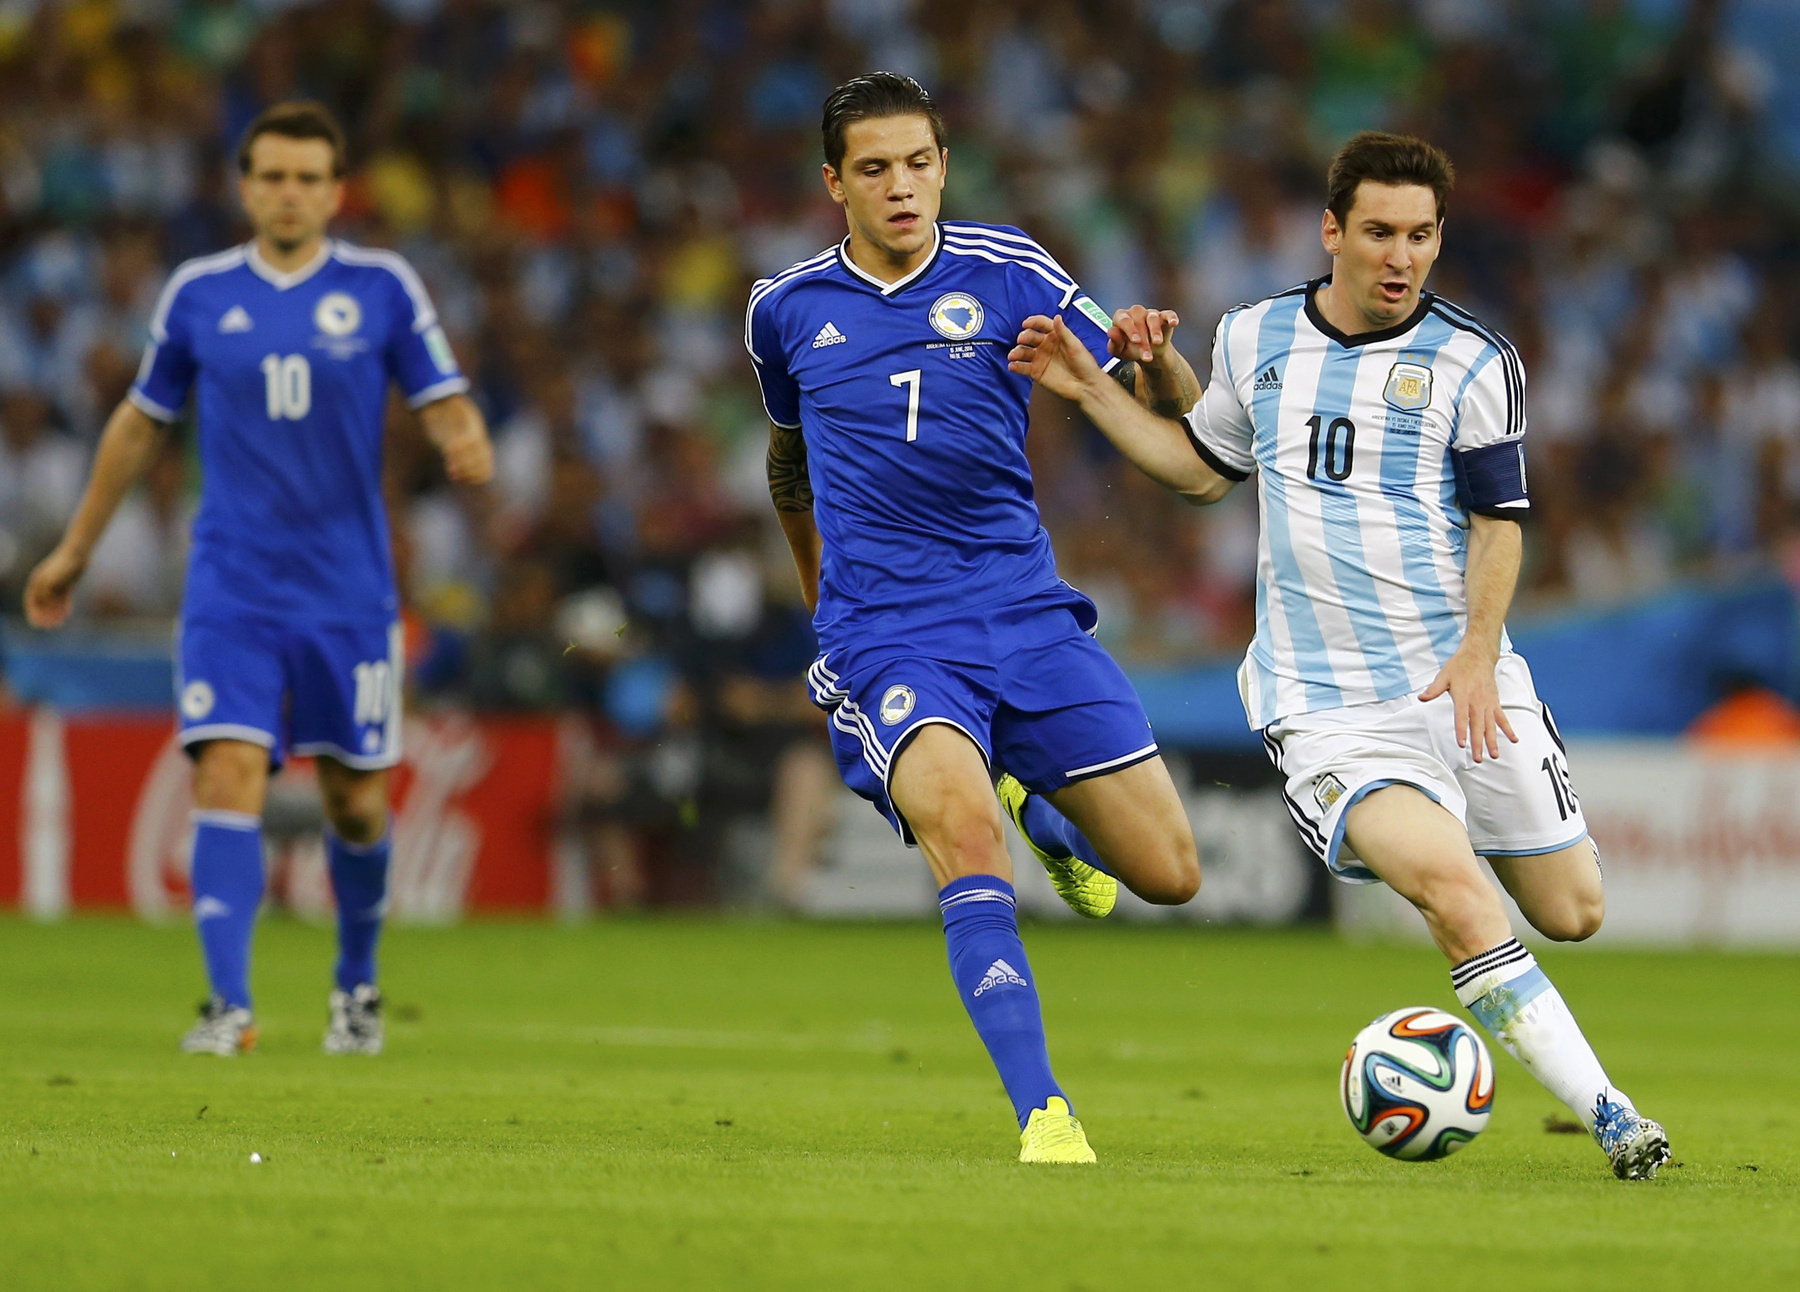 Messi a második félidőben már nagy kedvvel játszott, és már területe is volt jól futballozni